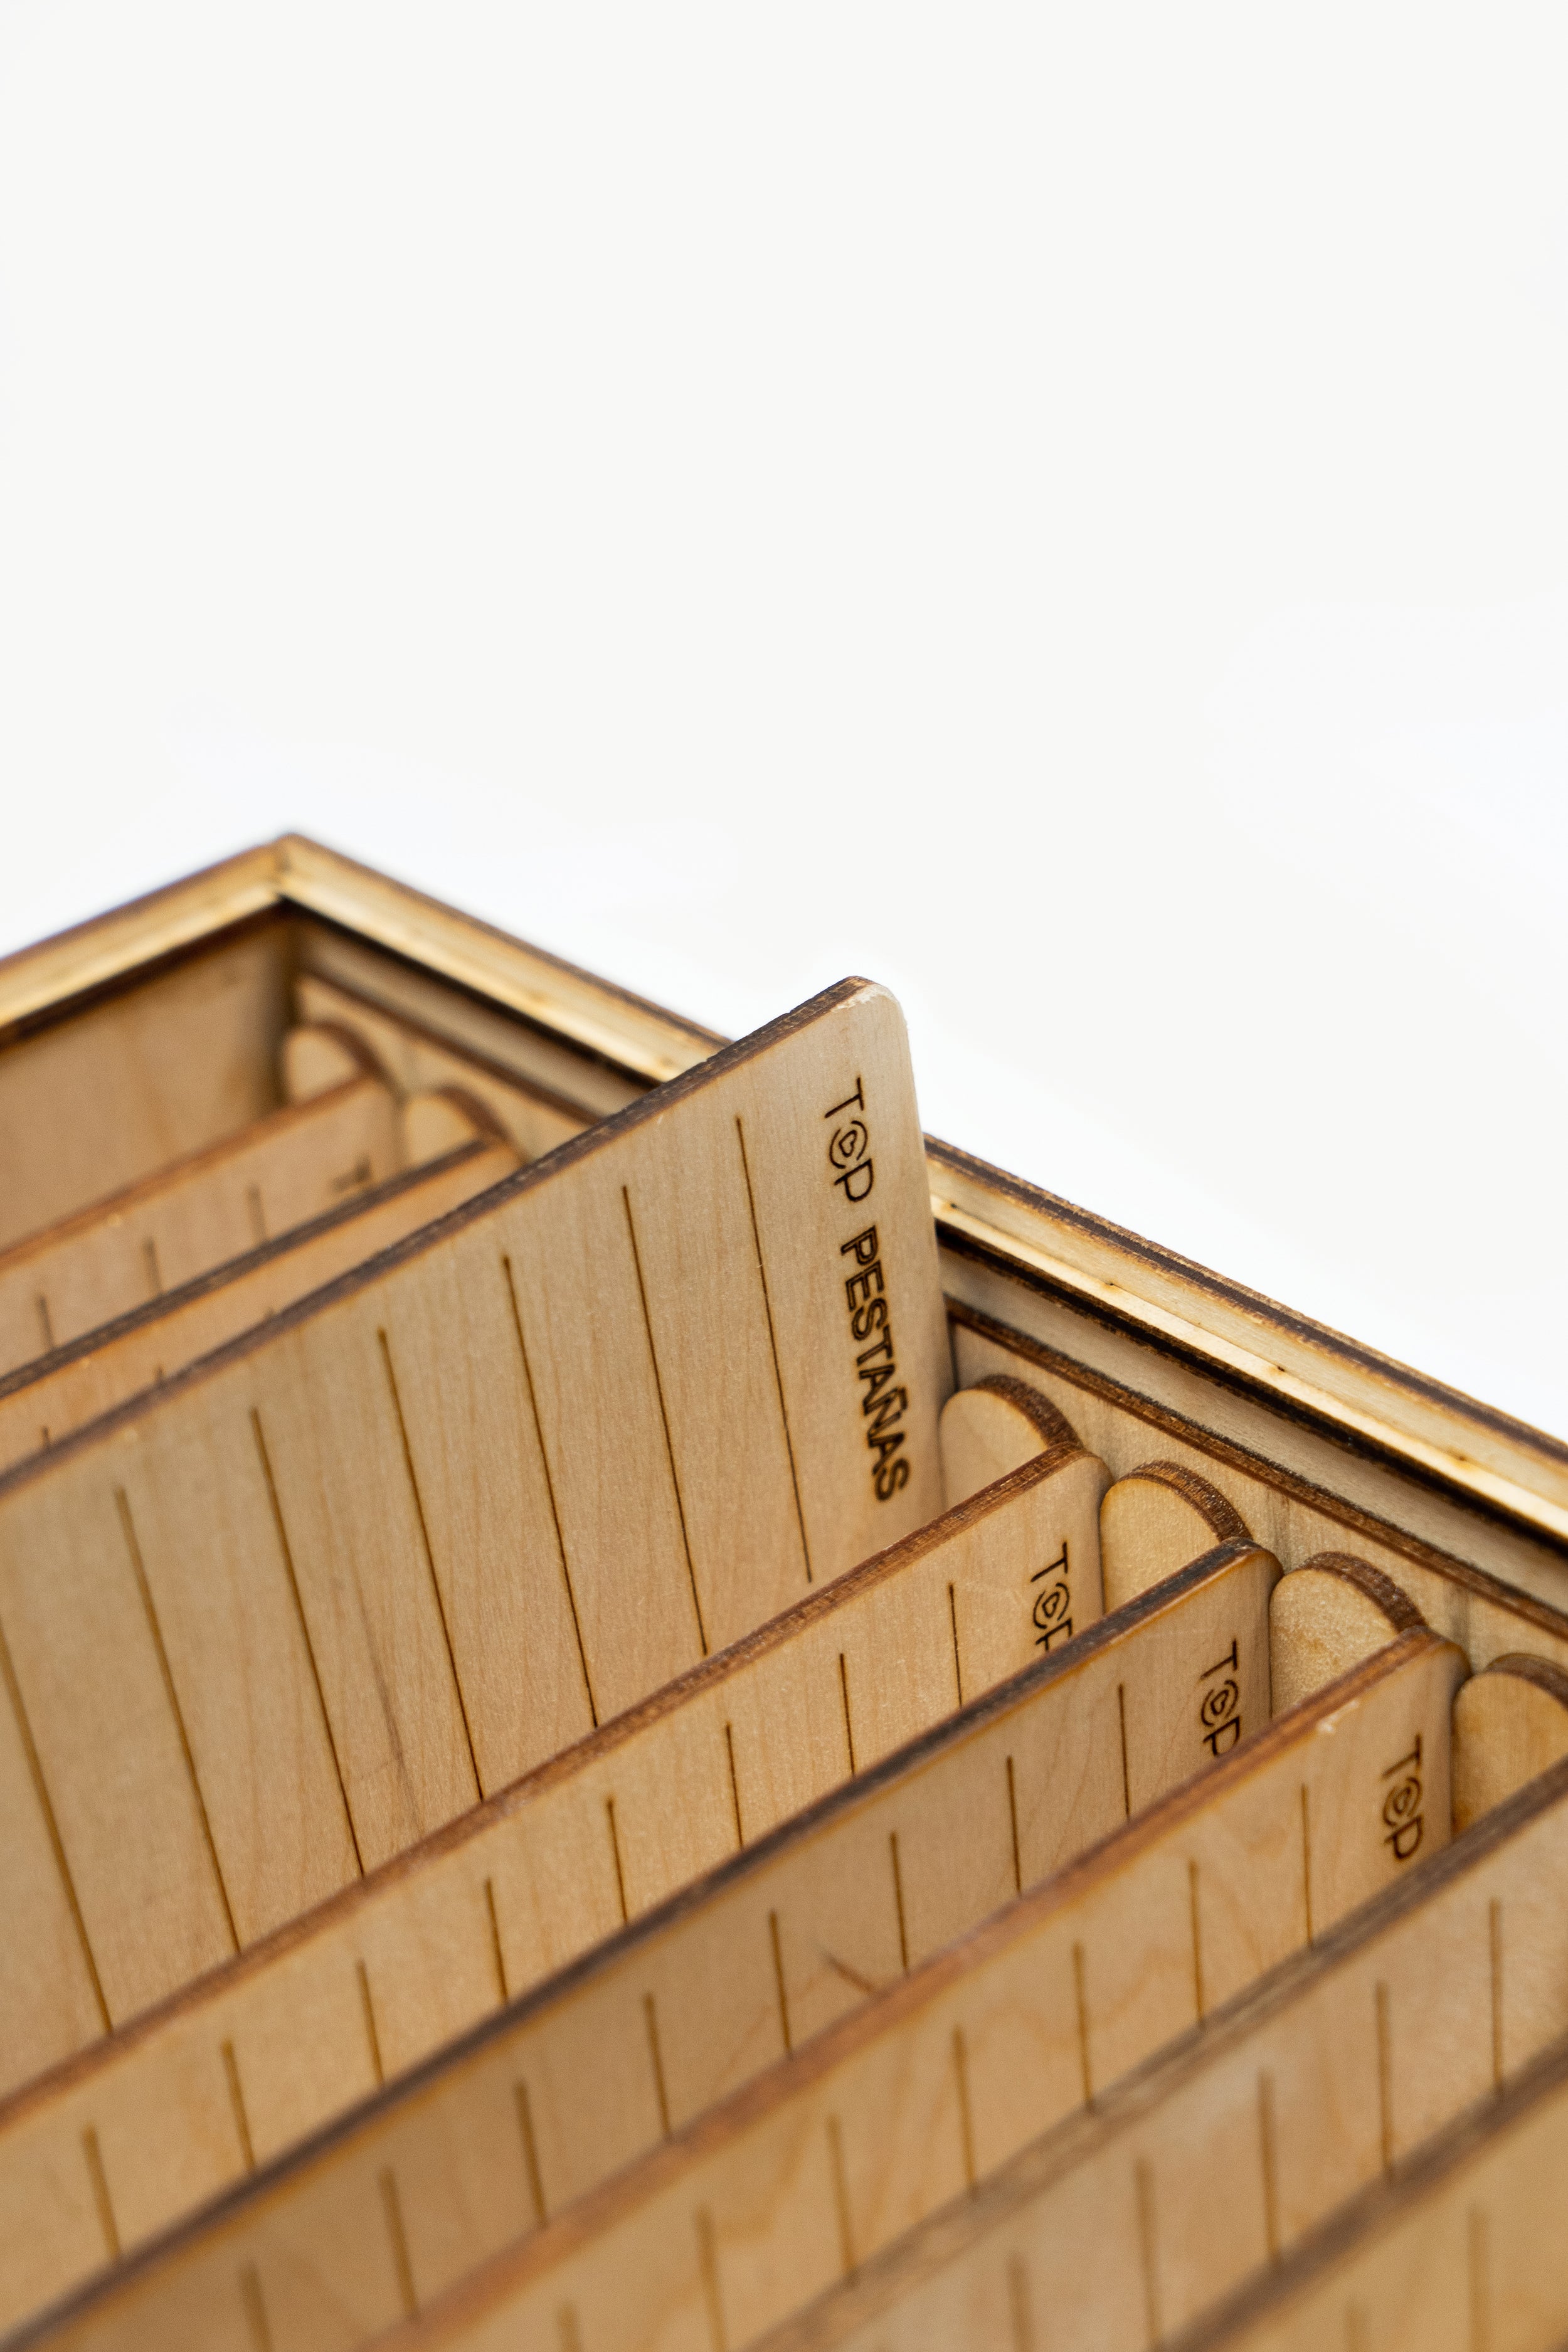 Caja de almacenamiento “Top Pestañas Lashbox” incluye 10 paletas